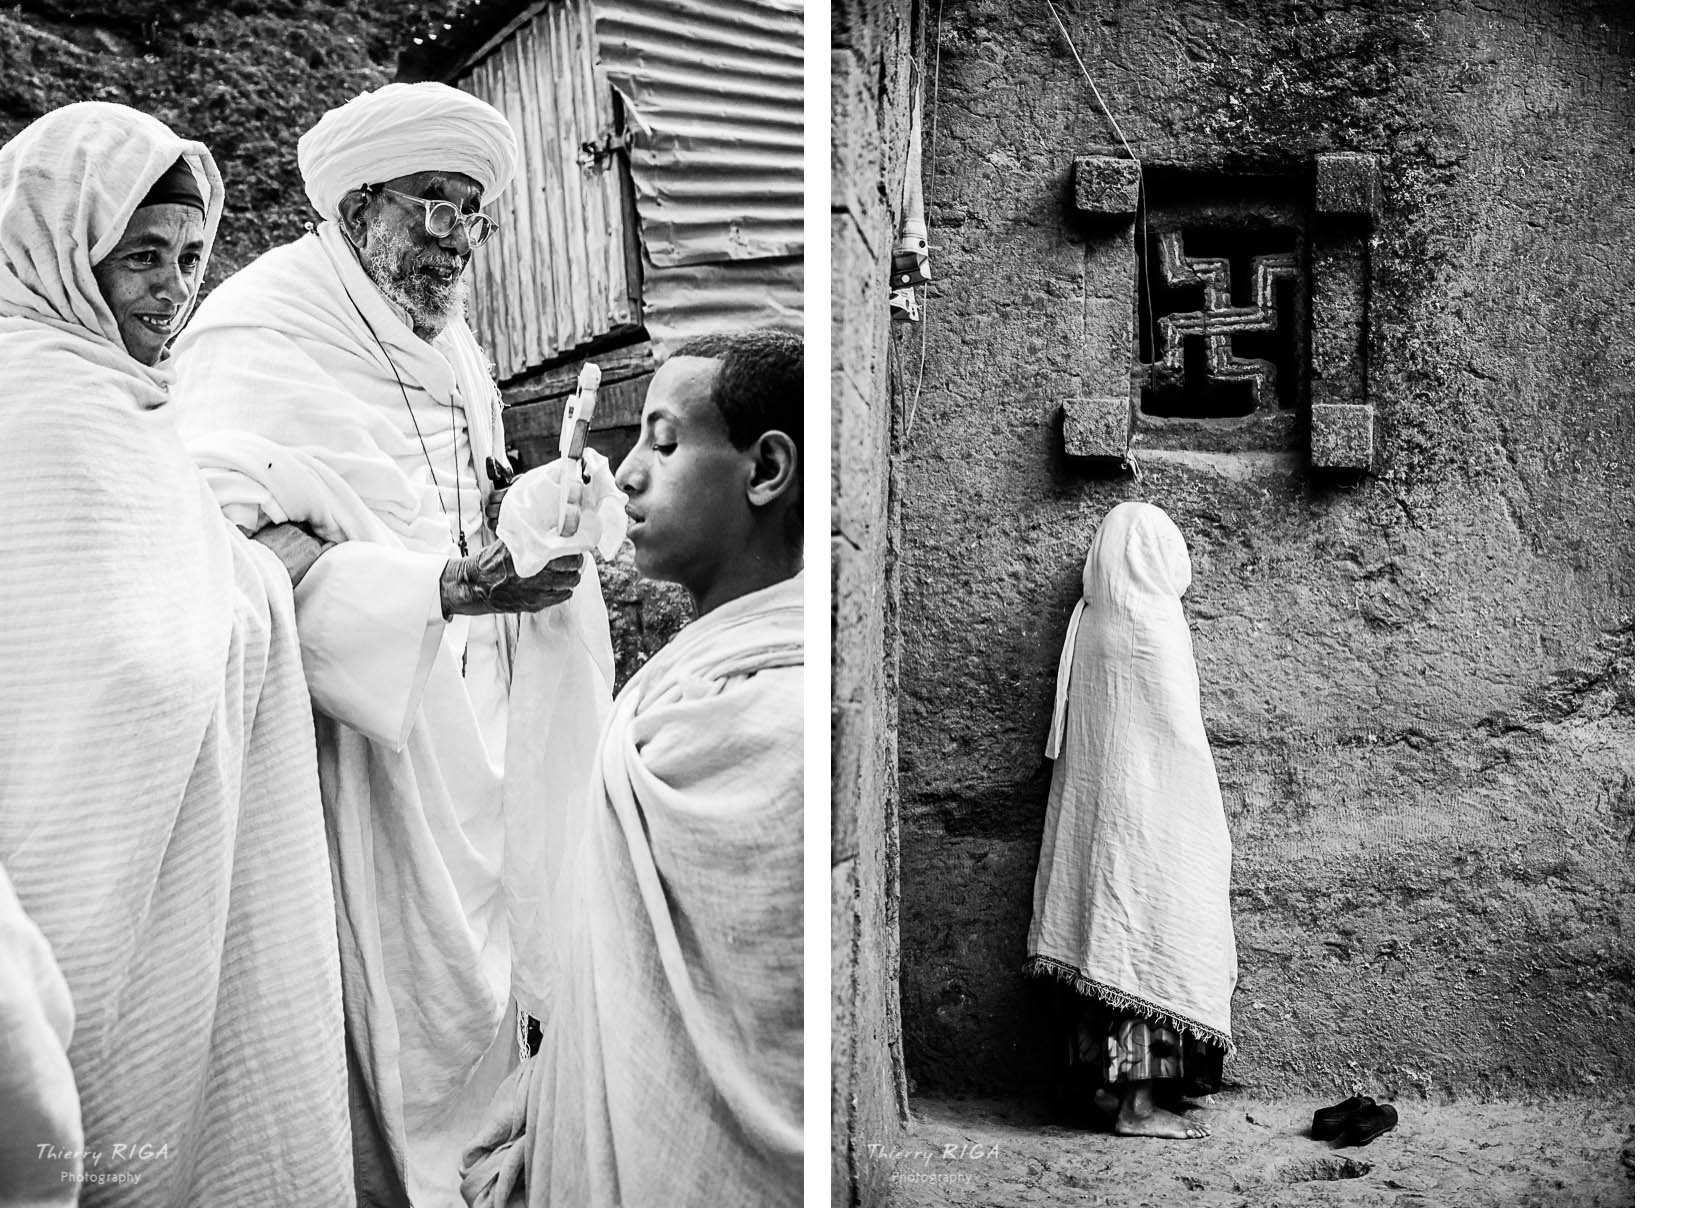 Blessing priest in Lalibela, Ethiopia